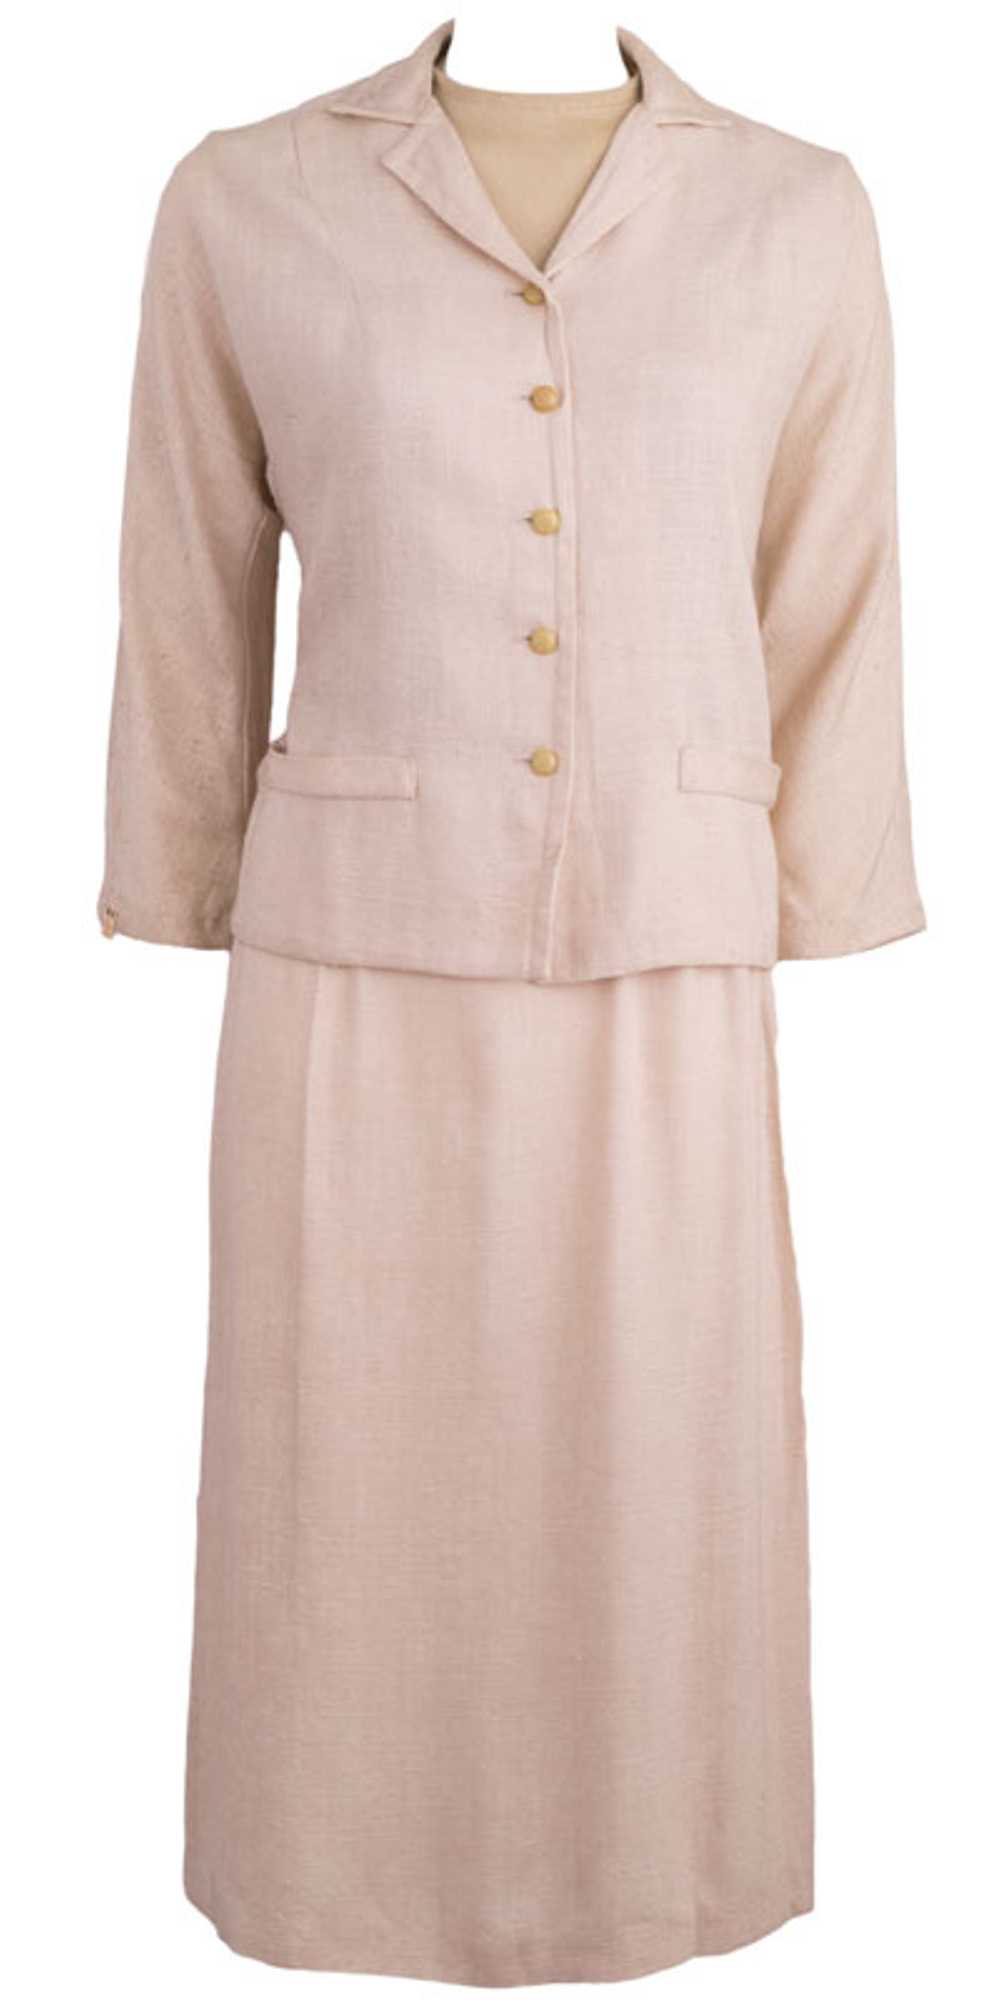 1950s Spring Ladies Suit - image 1